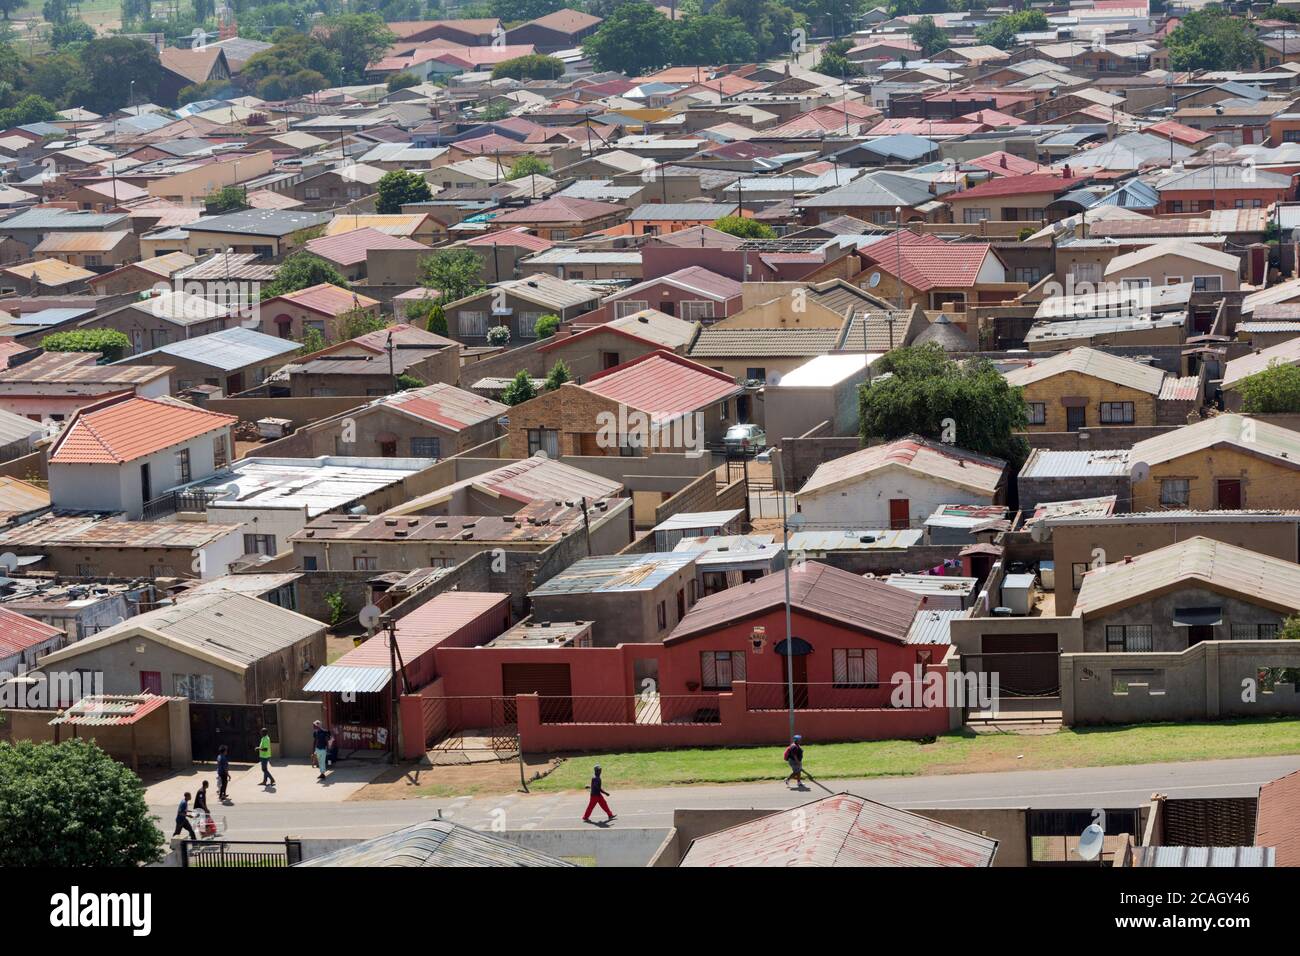 22.10.2018, Johannesburg, Gauteng, Südafrika - Übersicht der Häuser in der Gemeinde Soweto. 00U181022D002CAROEX.JPG [MODEL RELEASE: NO, PROPERTY RELE Stockfoto